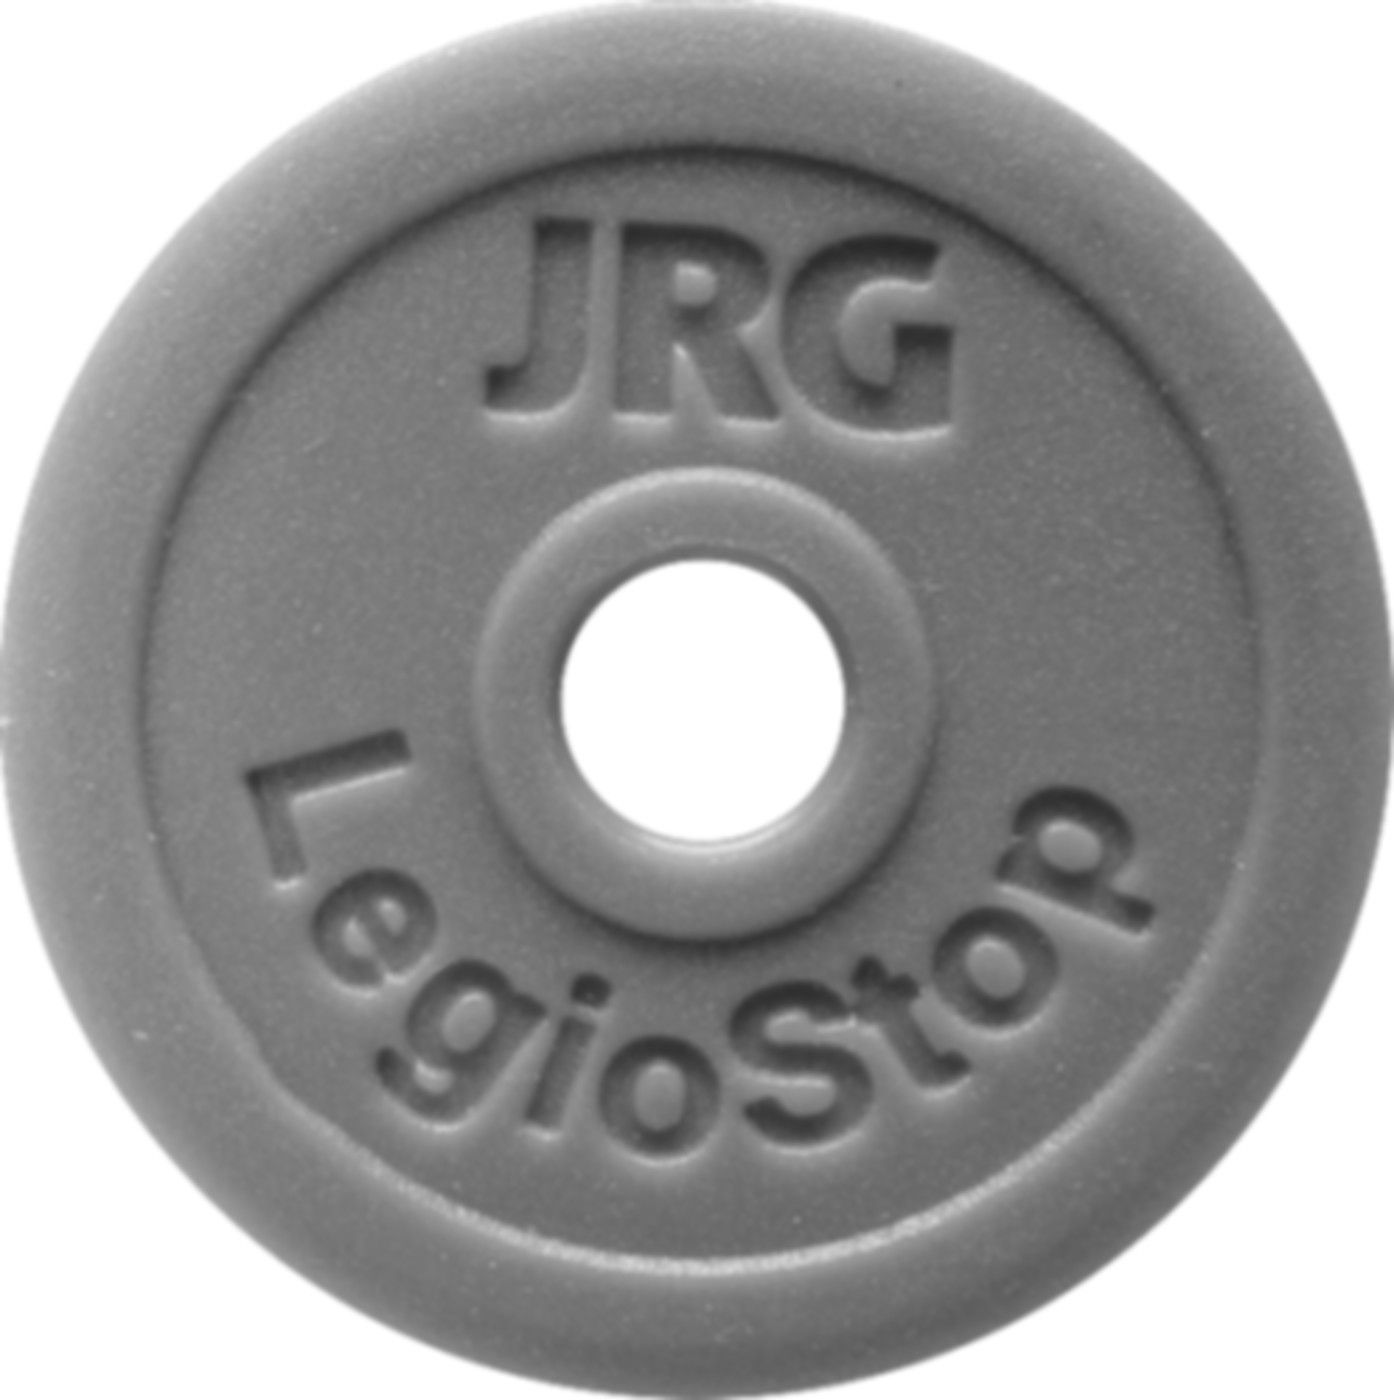 Markierschild Grün d 53mm 8501.100 für Oberteil LegioStop 1/2" + 3/4" - JRG Armaturen